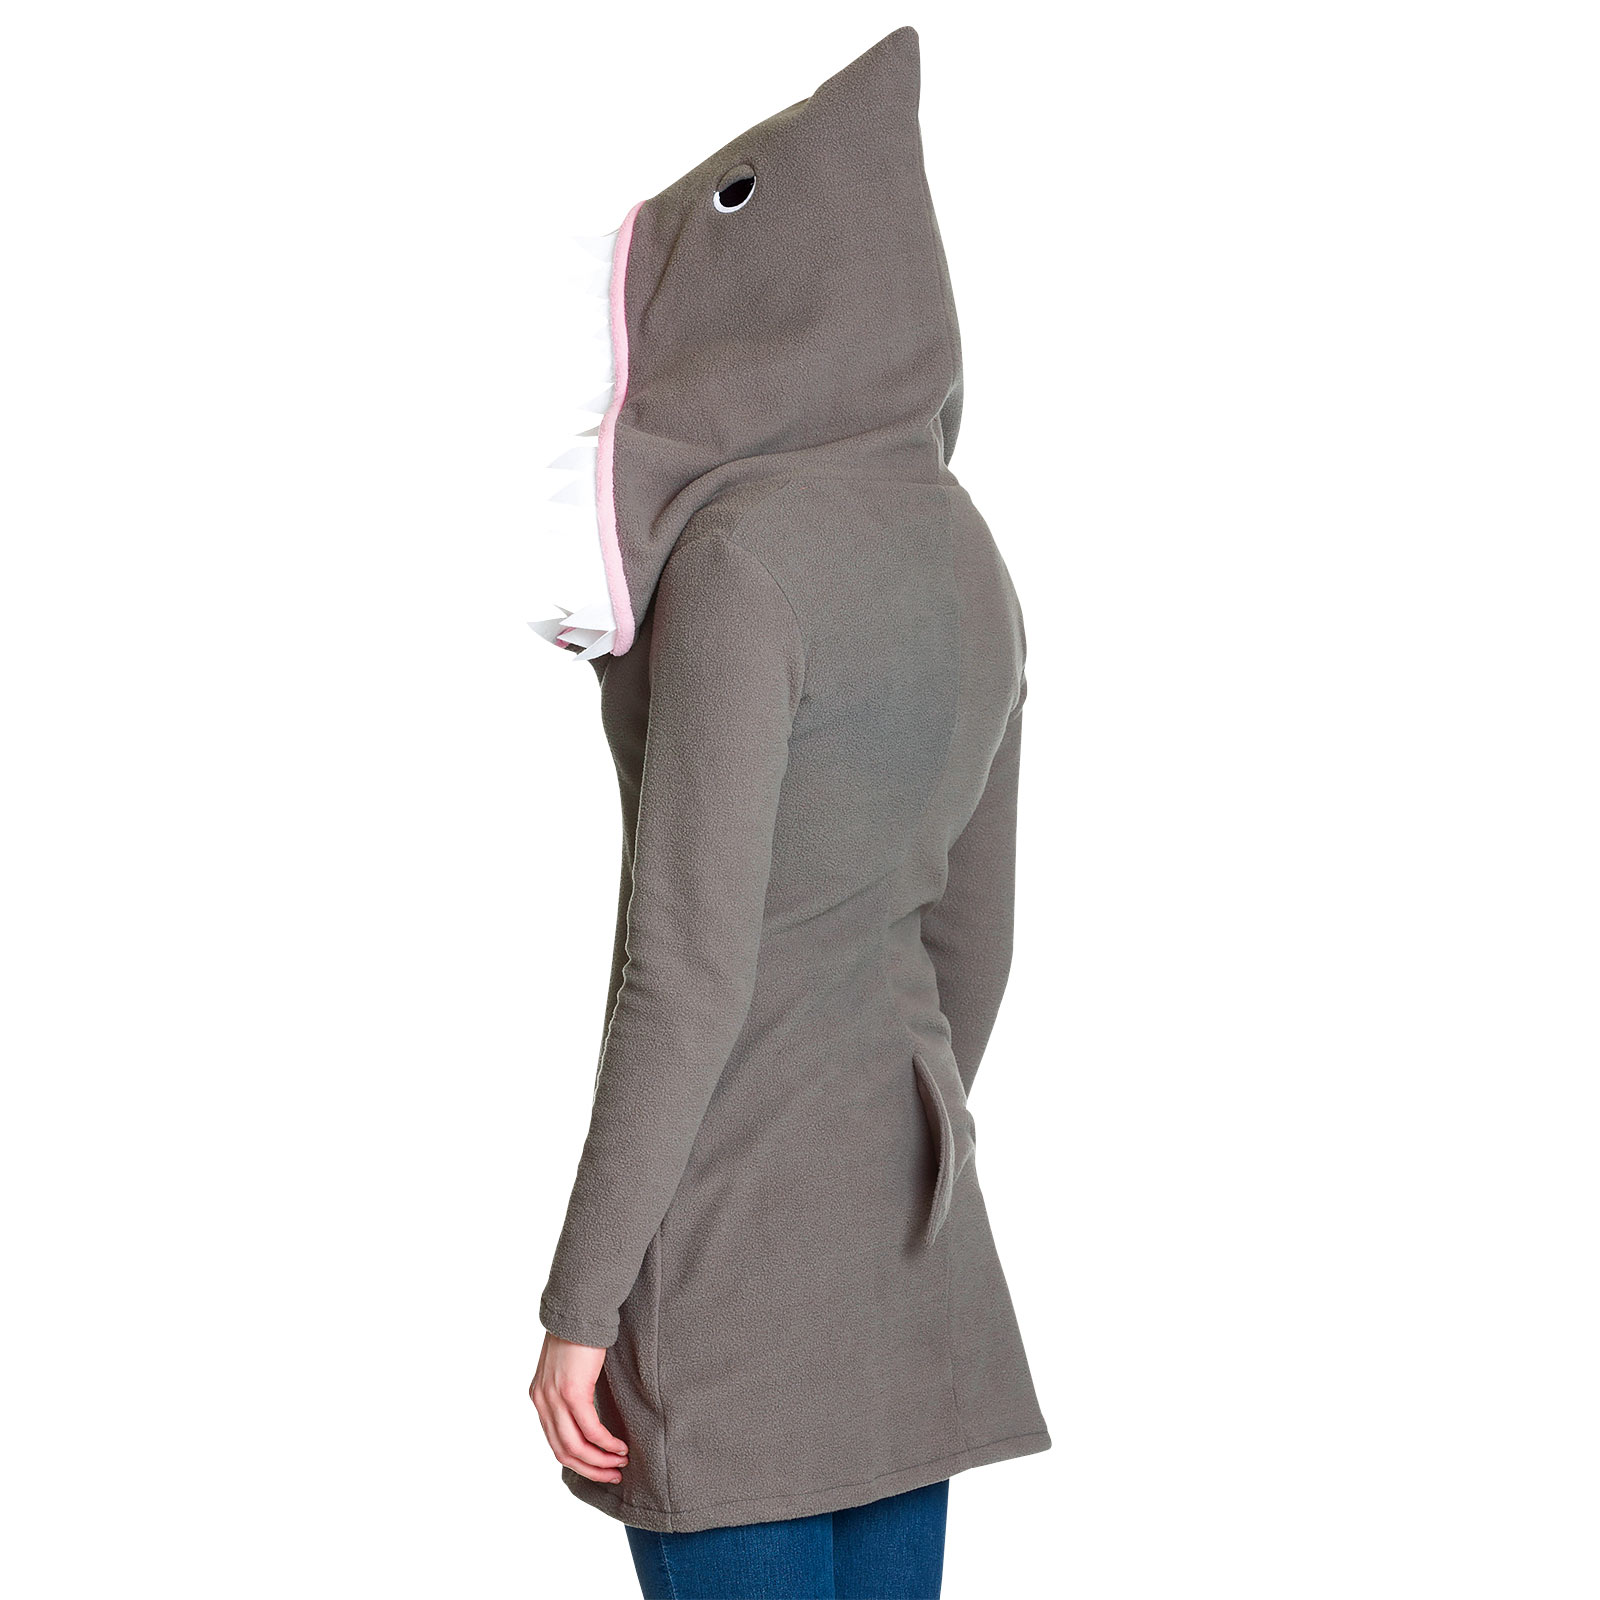 Sharky - Costume de requin pour femmes